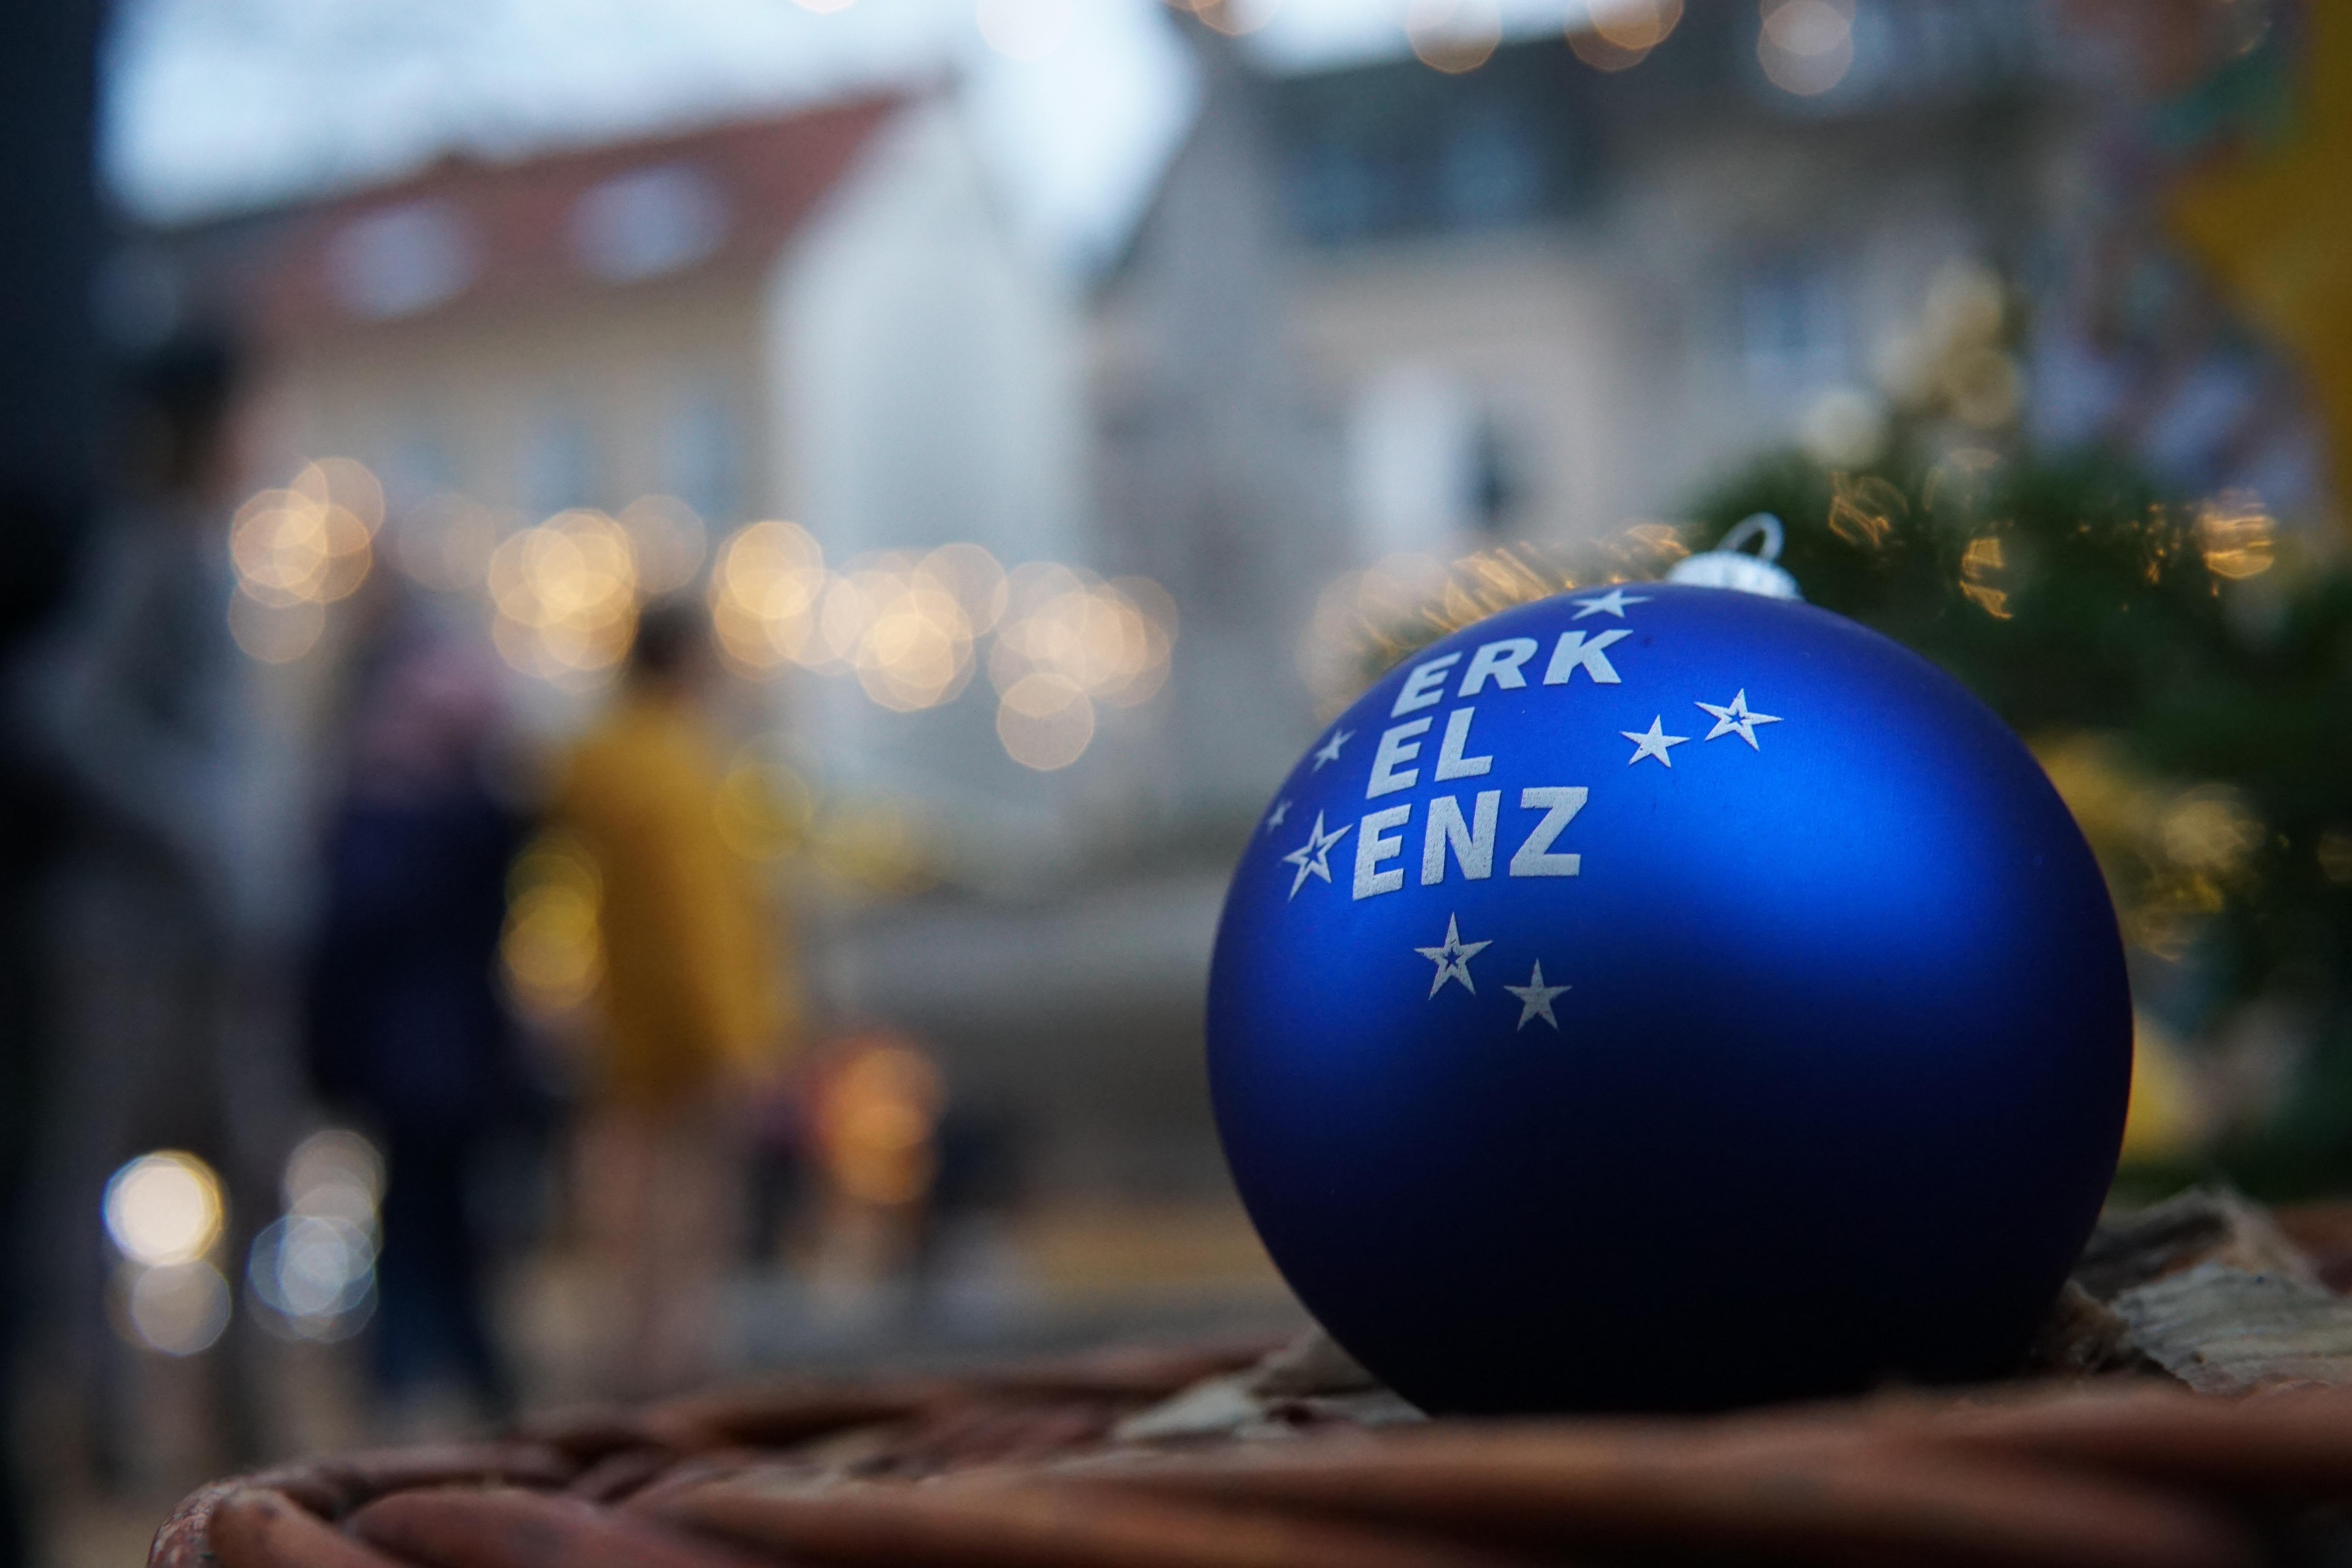 Eine blaue Christbaumkugel mit der Aufschrift "Stadt Erkelenz"